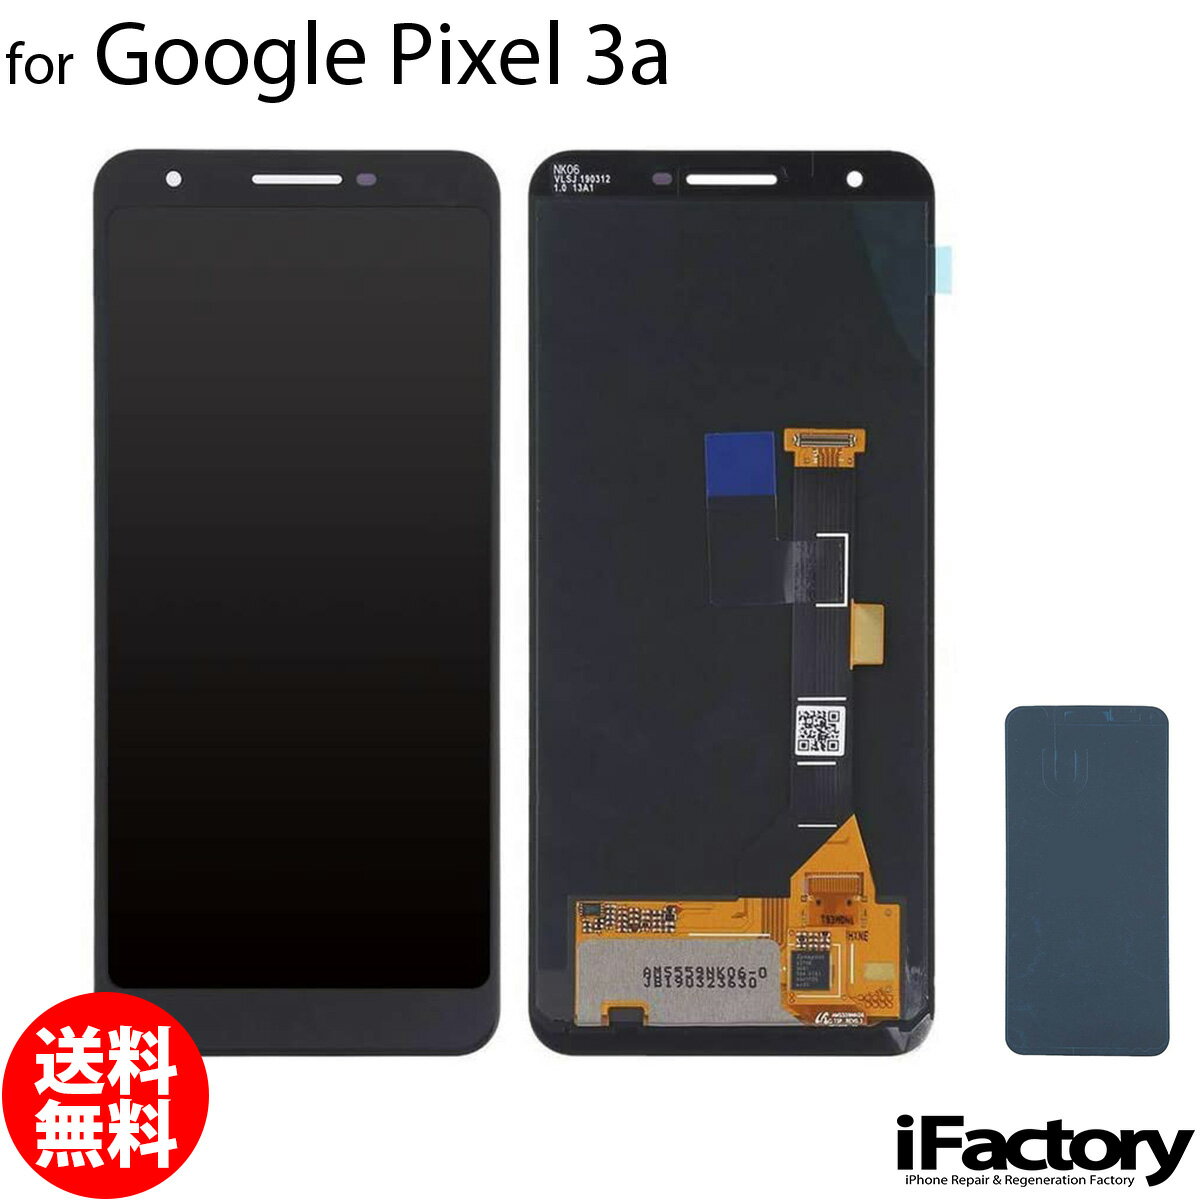 【楽天1位】Google Pixel 3a 互換 液晶パネル タッチパネル OLED